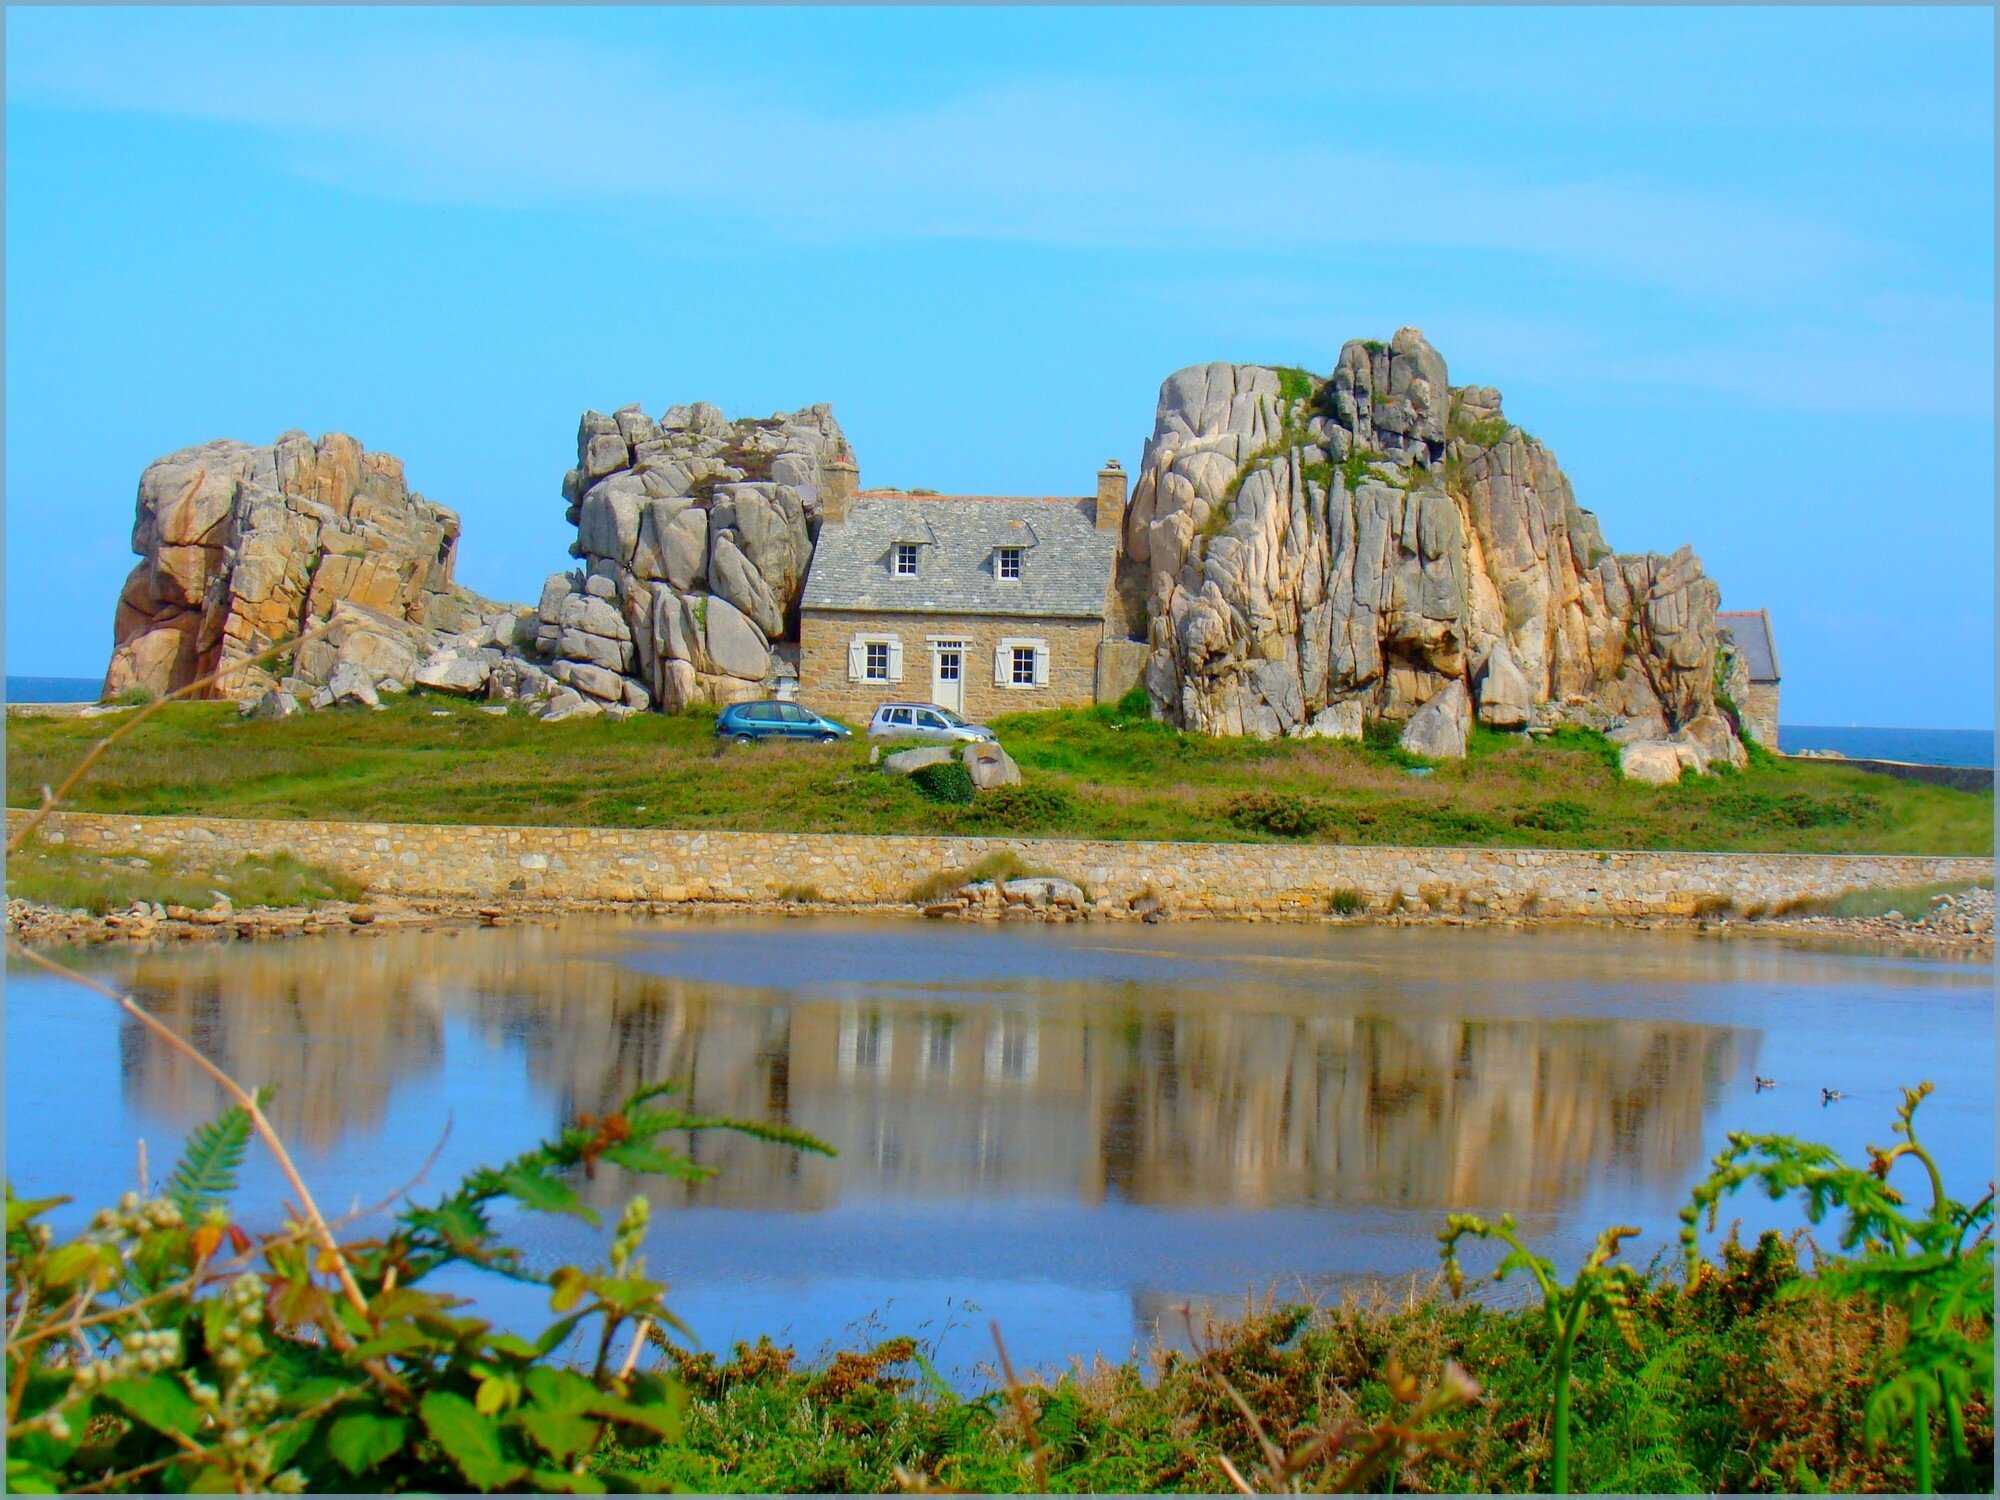 Tendance des prix immobiliers sur le littoral breton